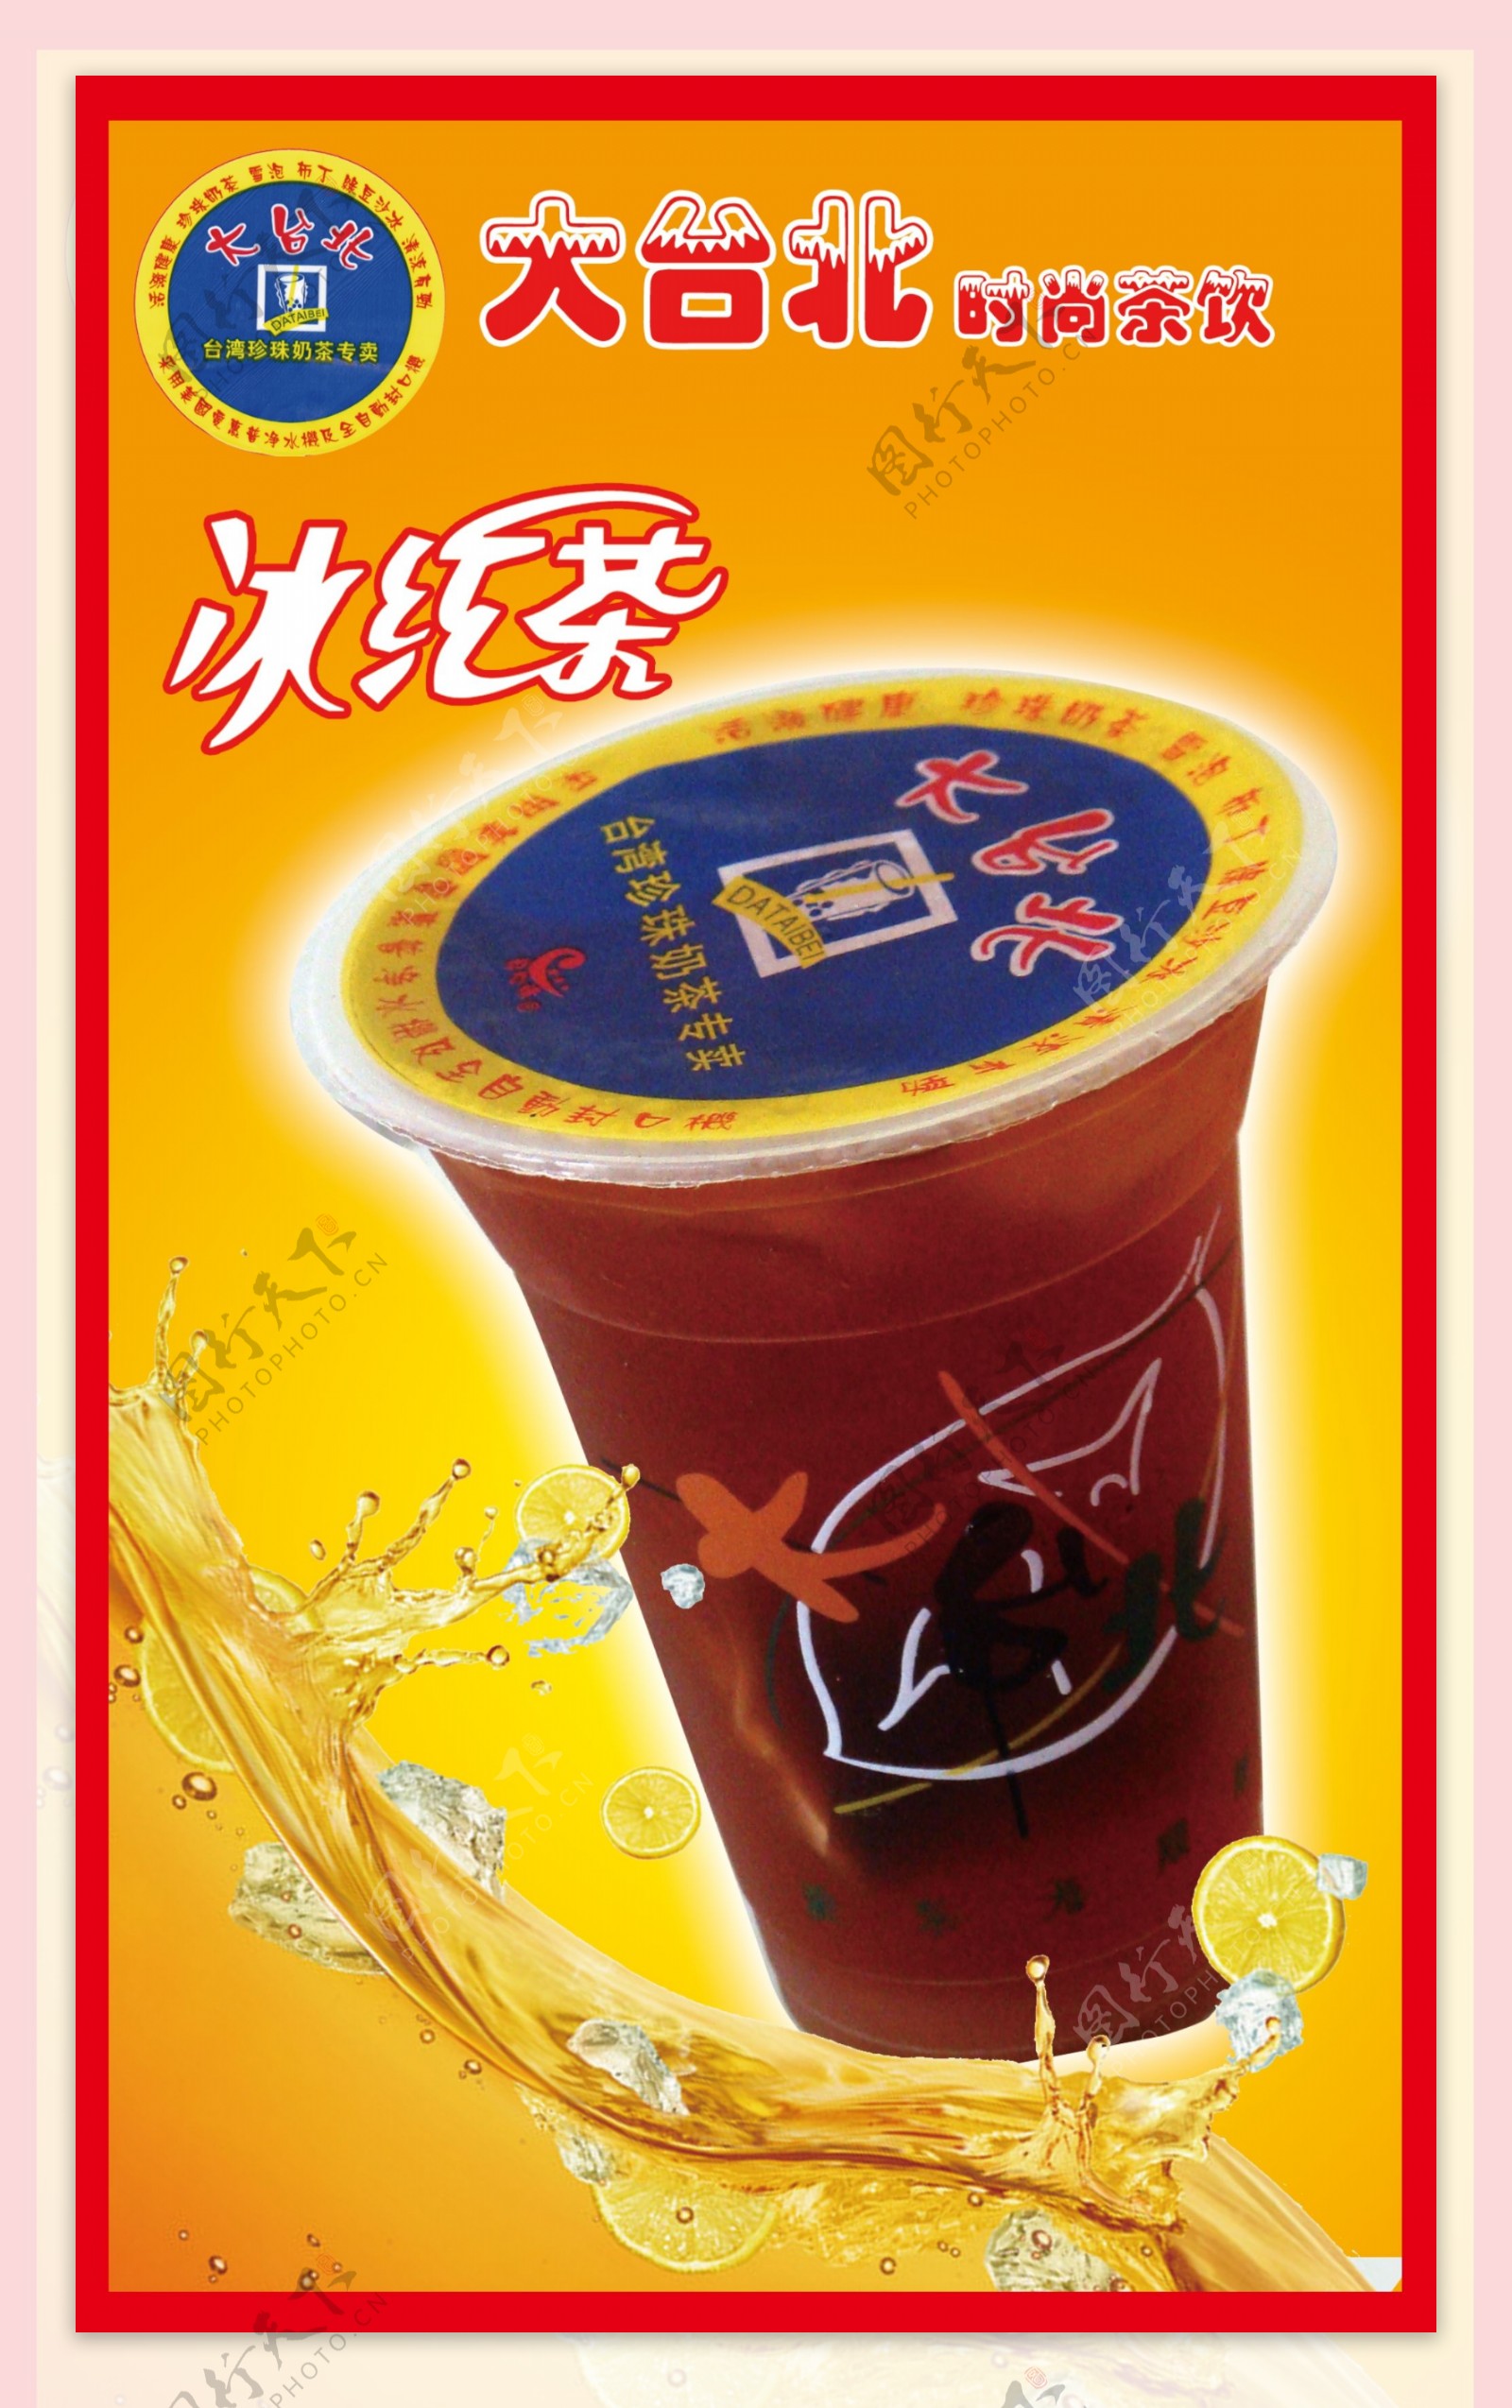 大台北冰红茶图片